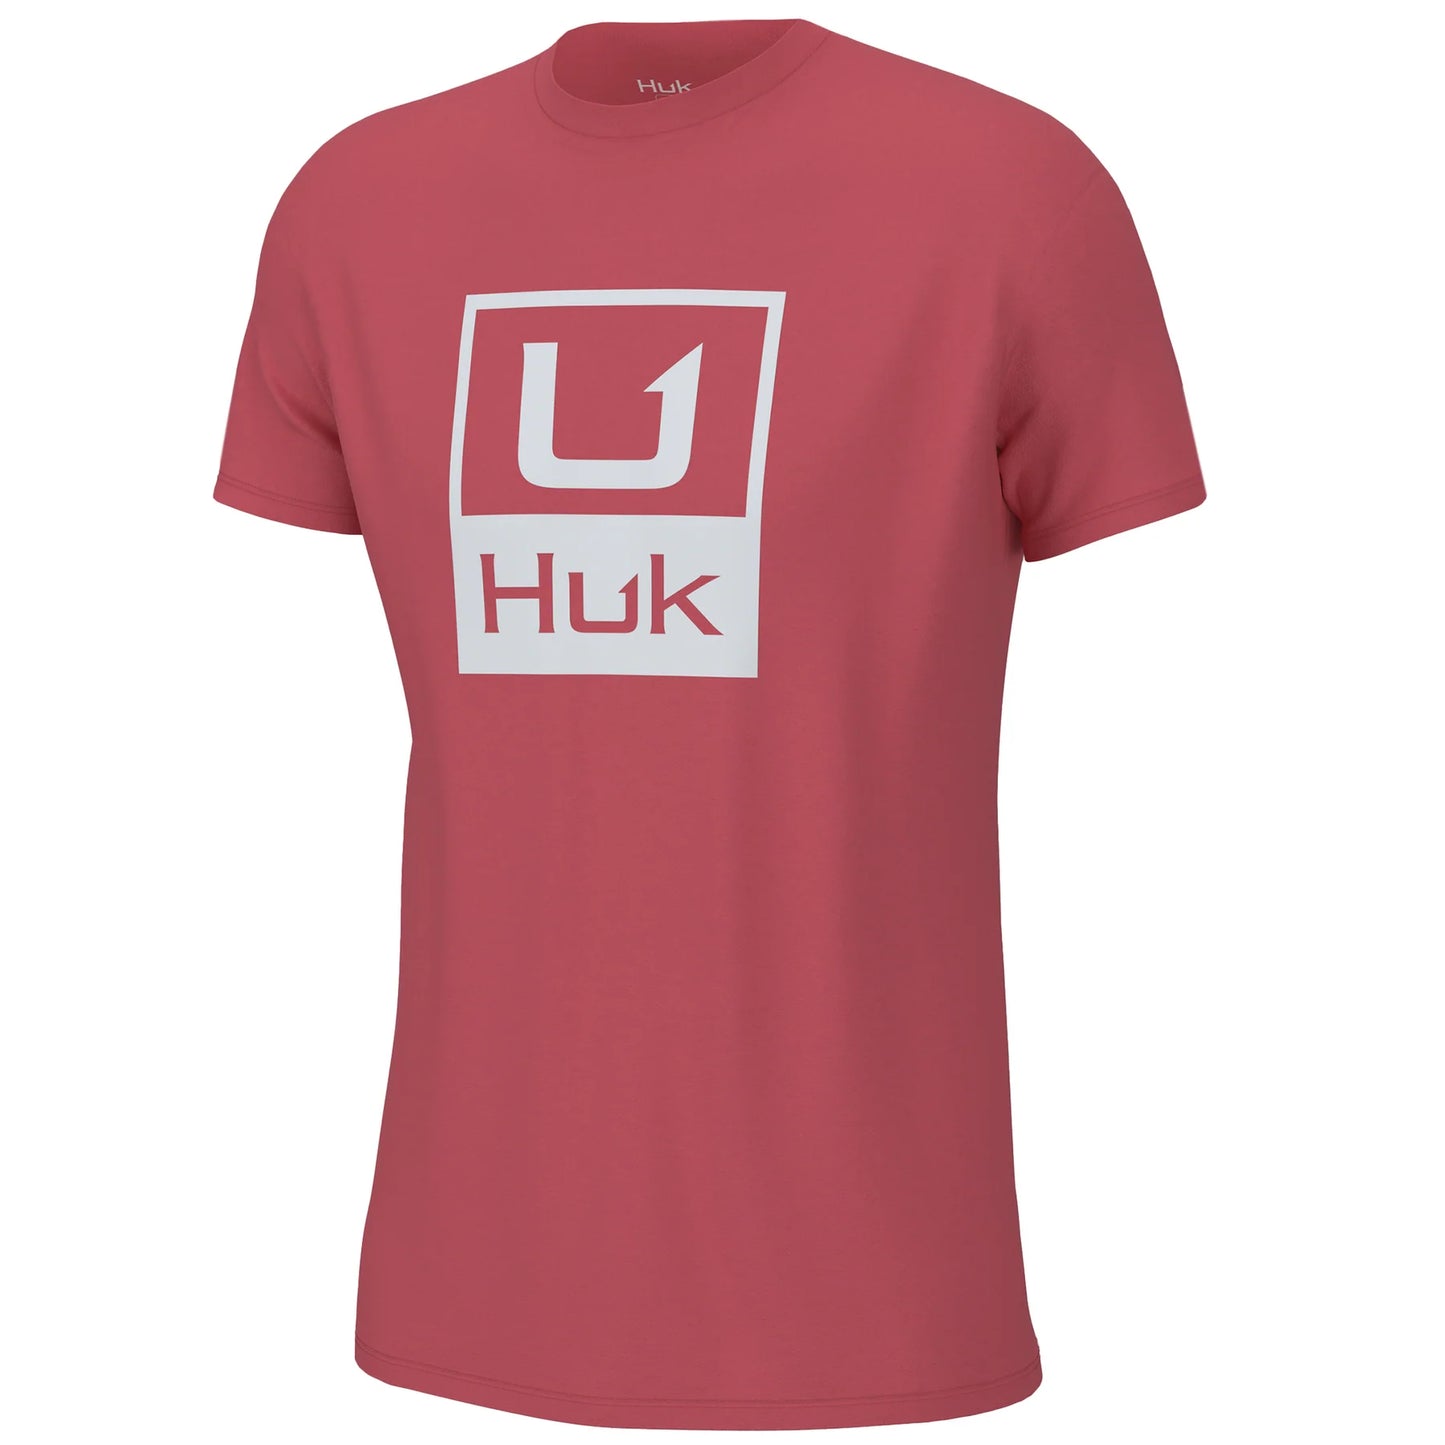 Huk Youth Huk'd Up Logo Tee